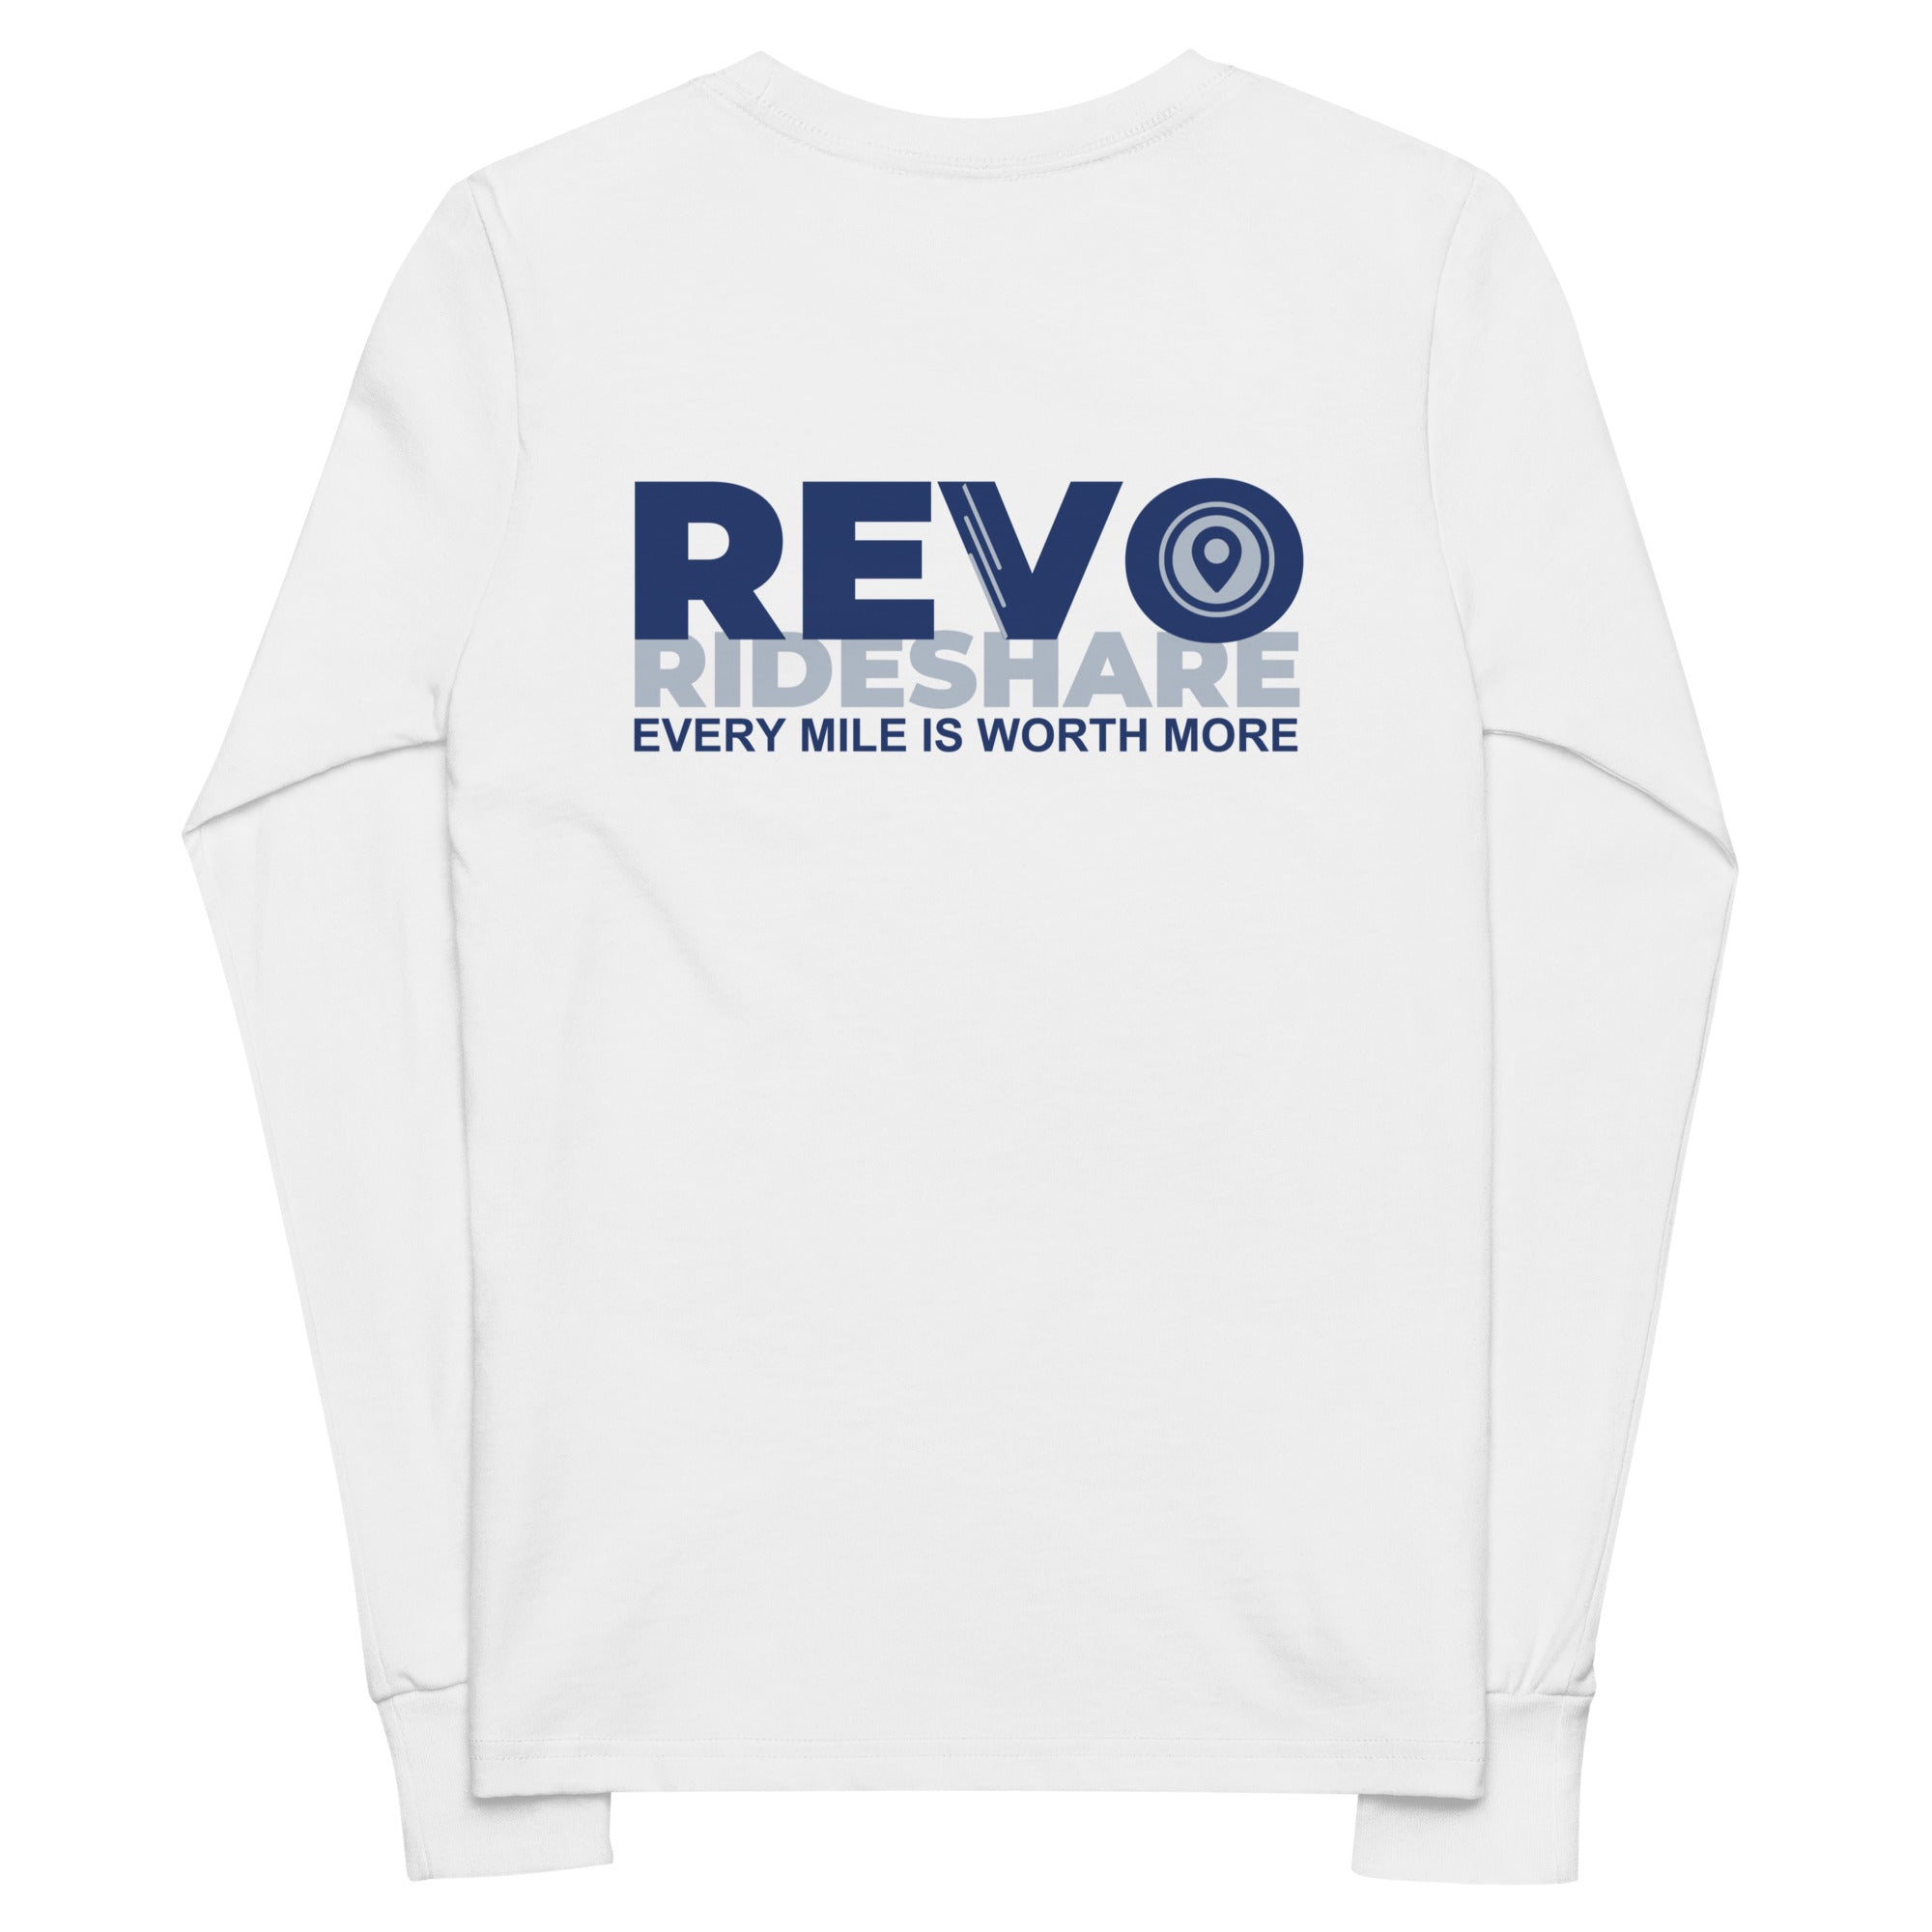 REVO Rideshare Youth long sleeve tee v2